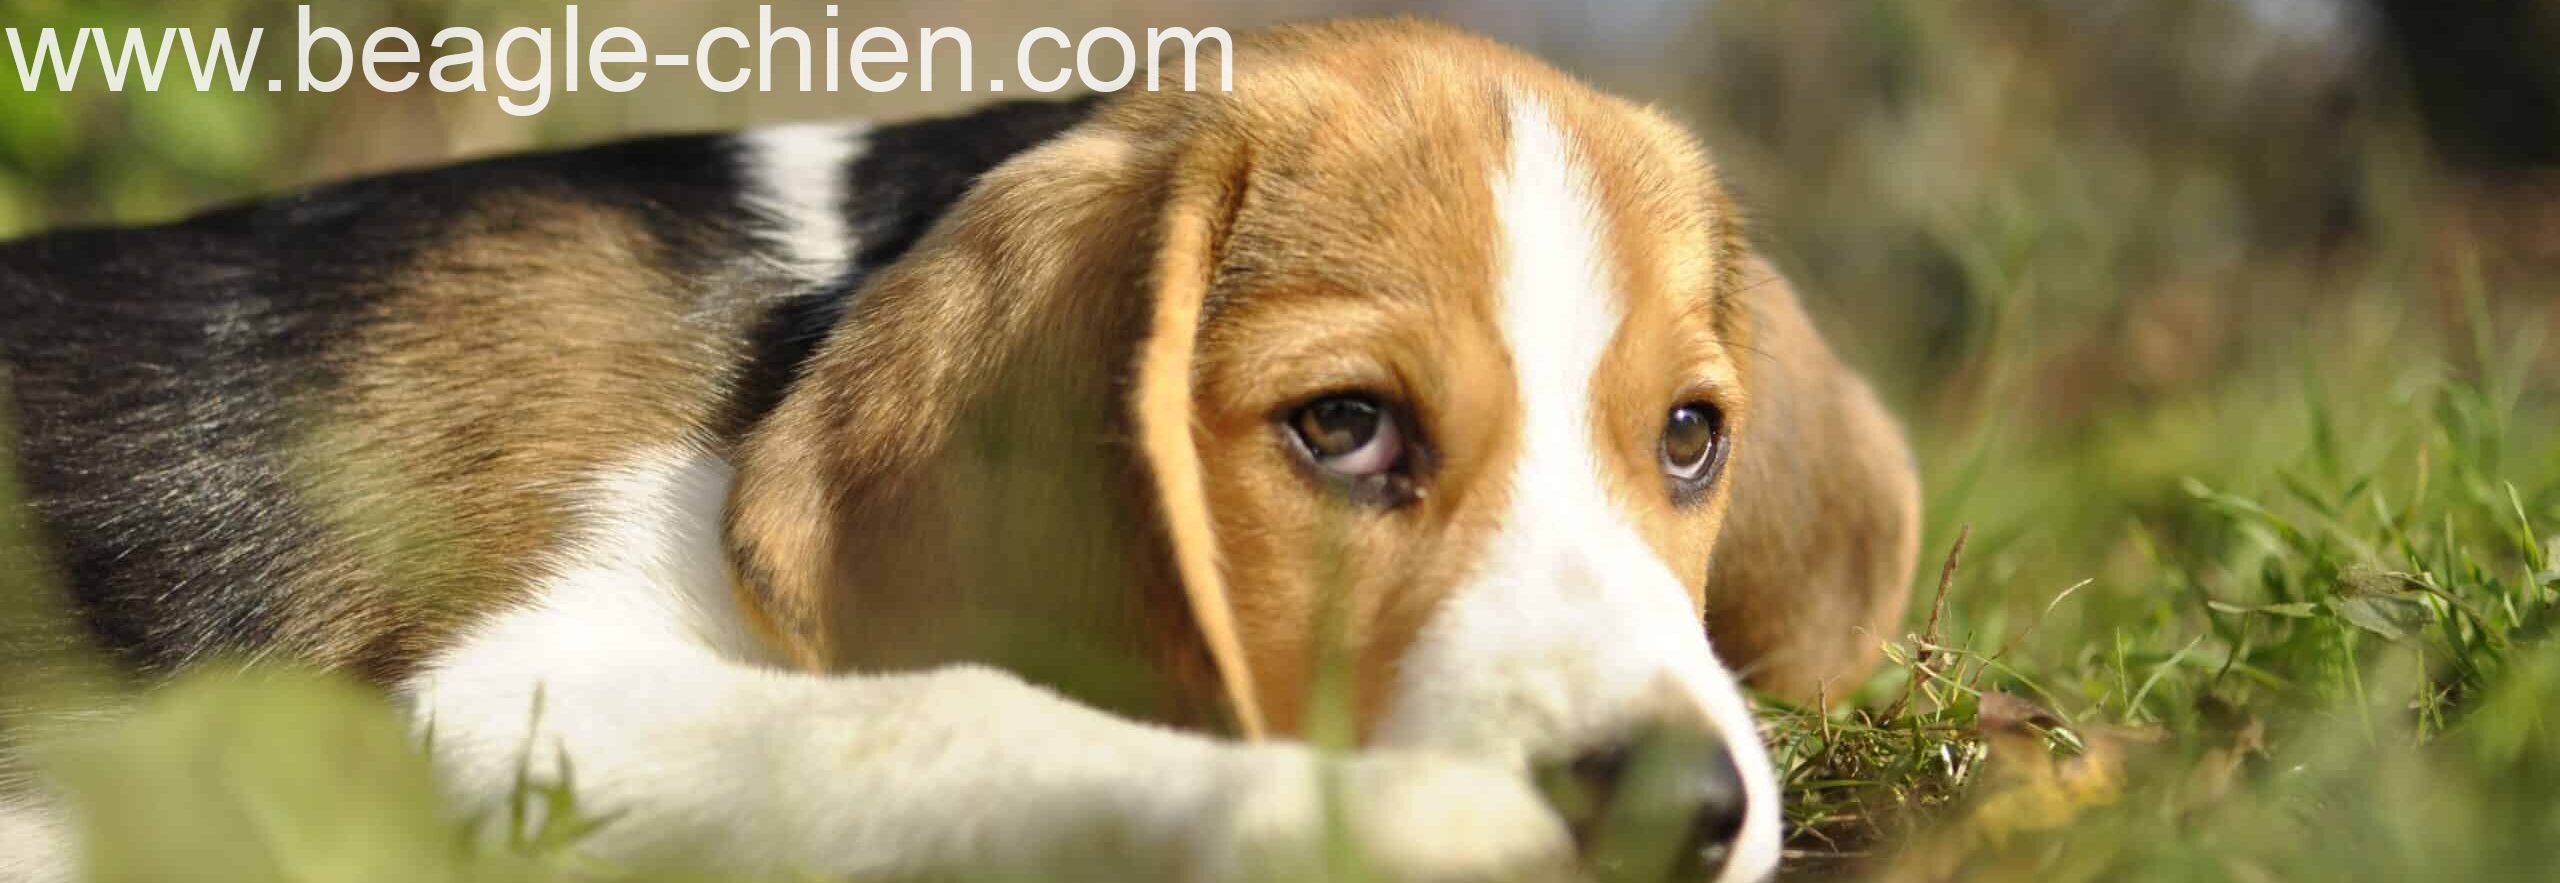 tour de poitrail beagle